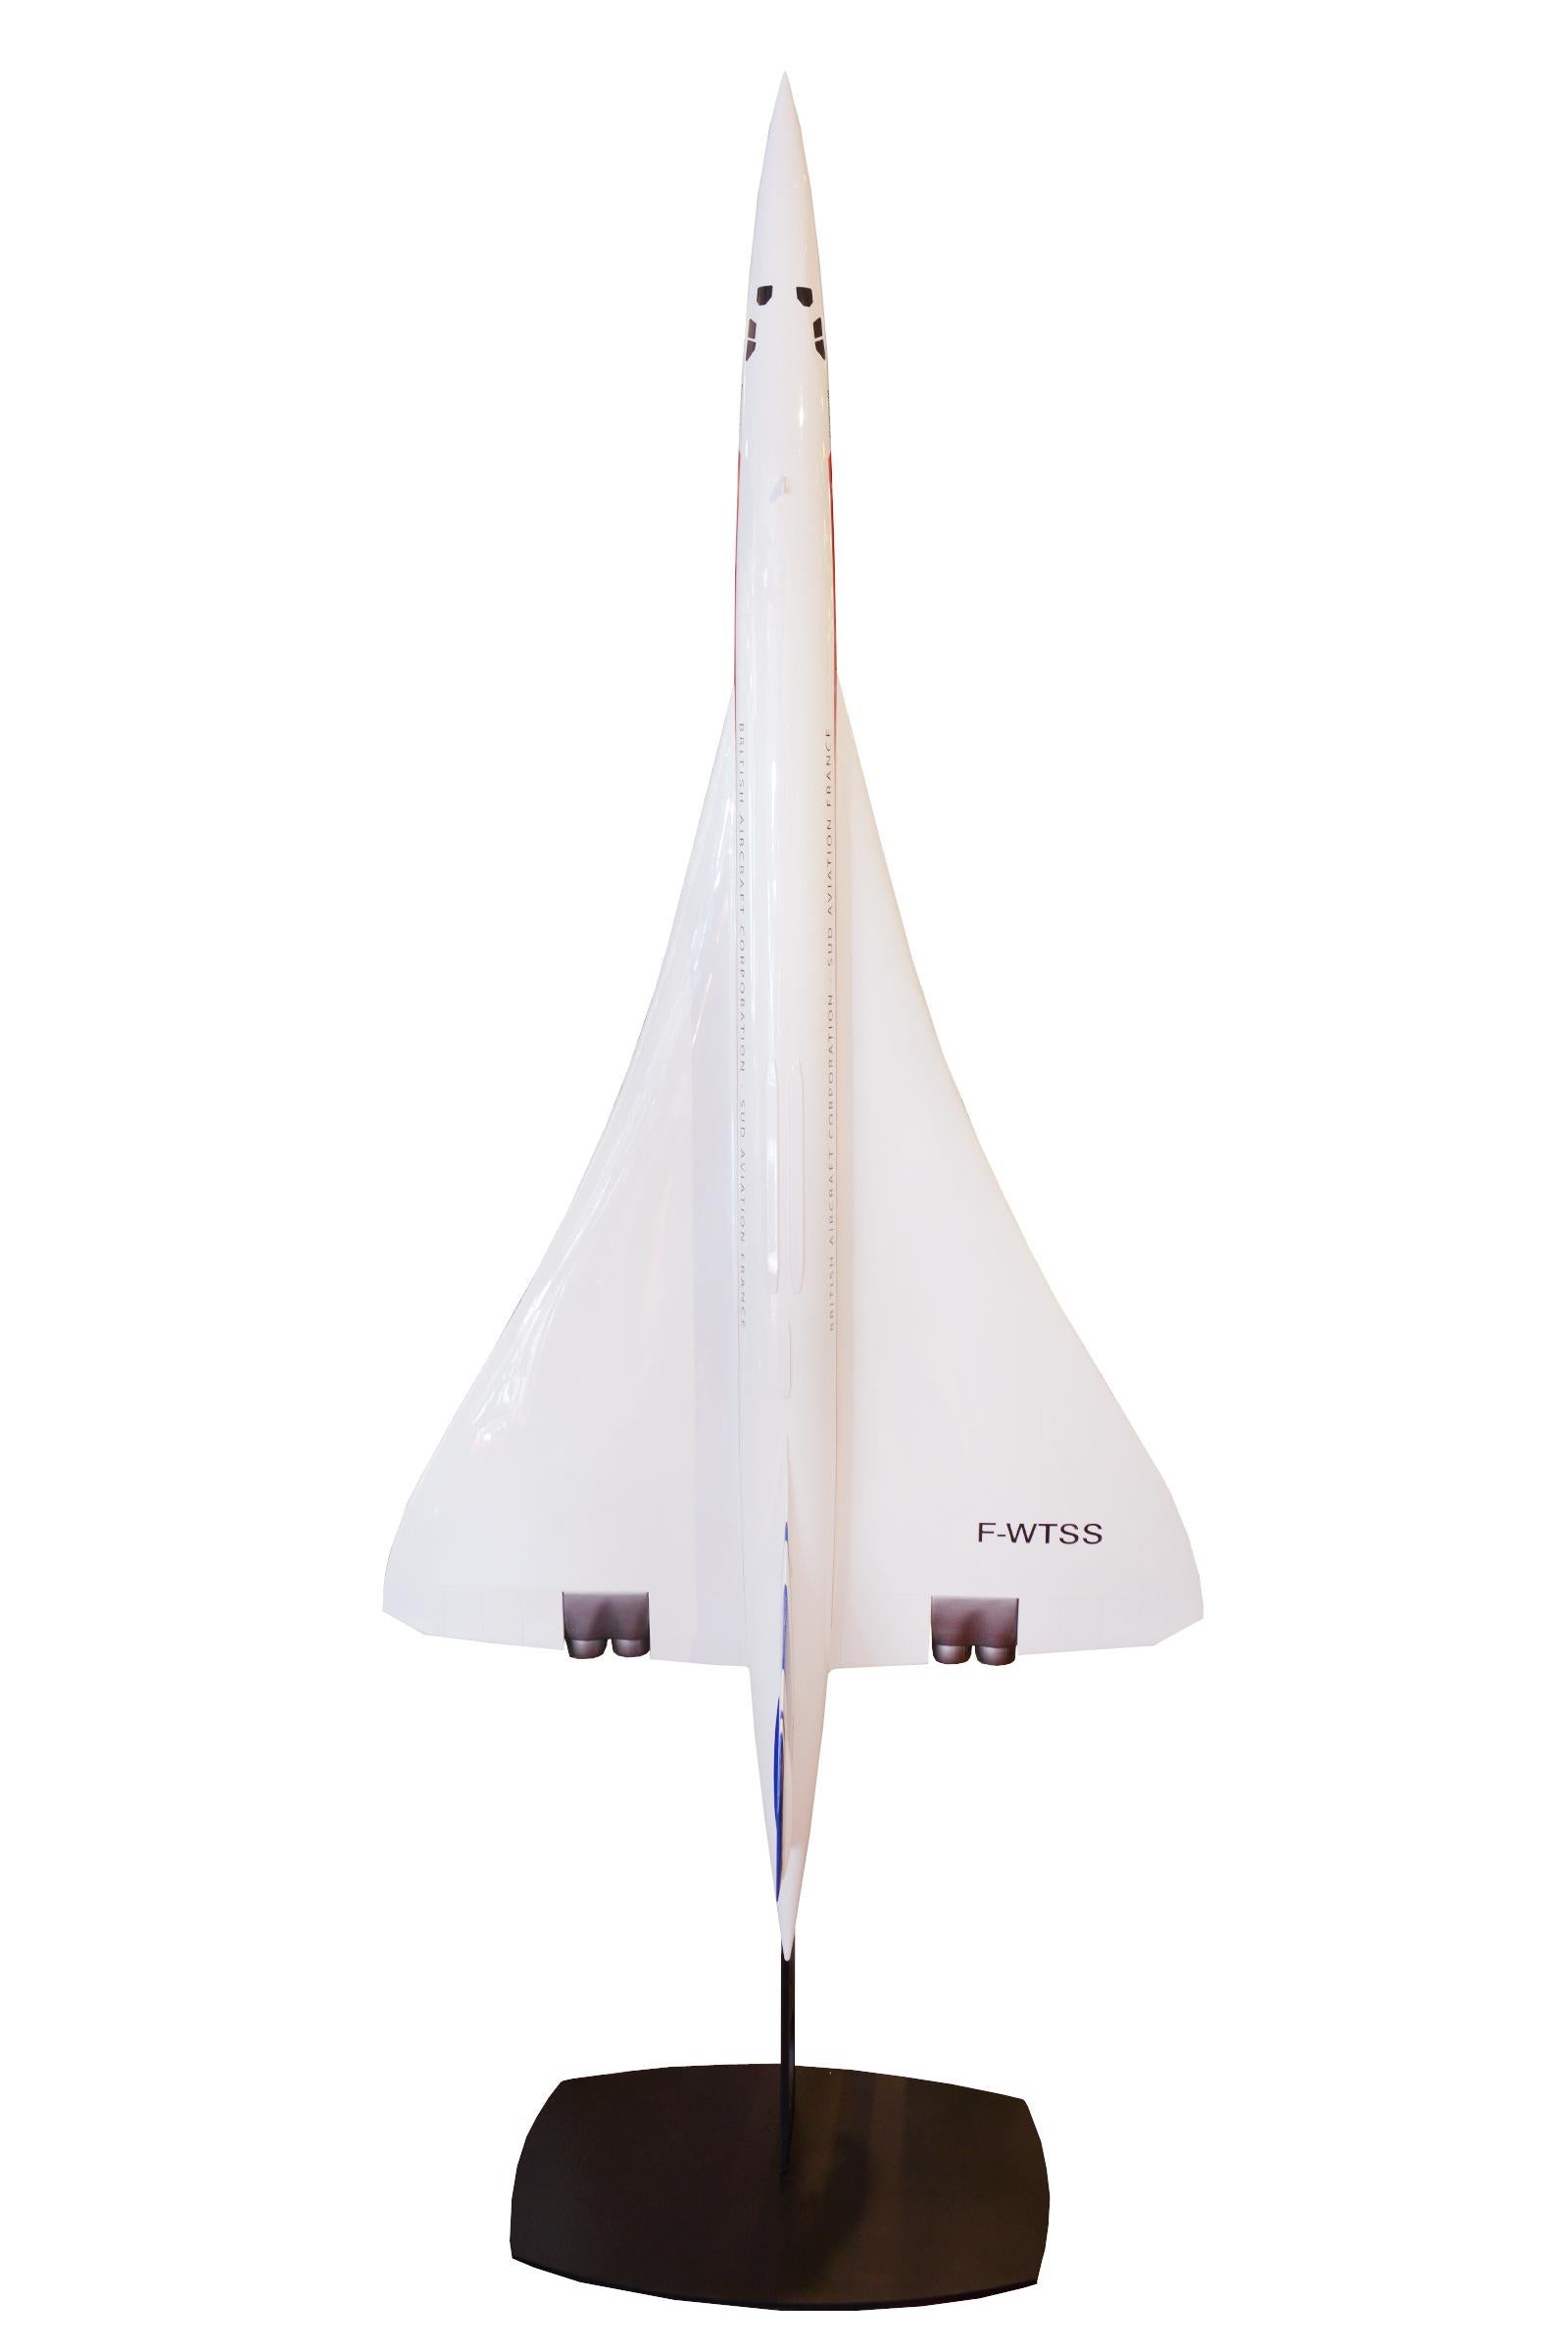 Modèle de sculpture du Concorde en résine de haute qualité,
échelle 1/25. Base verticale en acier noirci.
Pièce exceptionnelle. Fabriqué en France.
Base : L 71 x P 55cm.
Modèle : Envergure 100cm x hauteur 290cm.
 